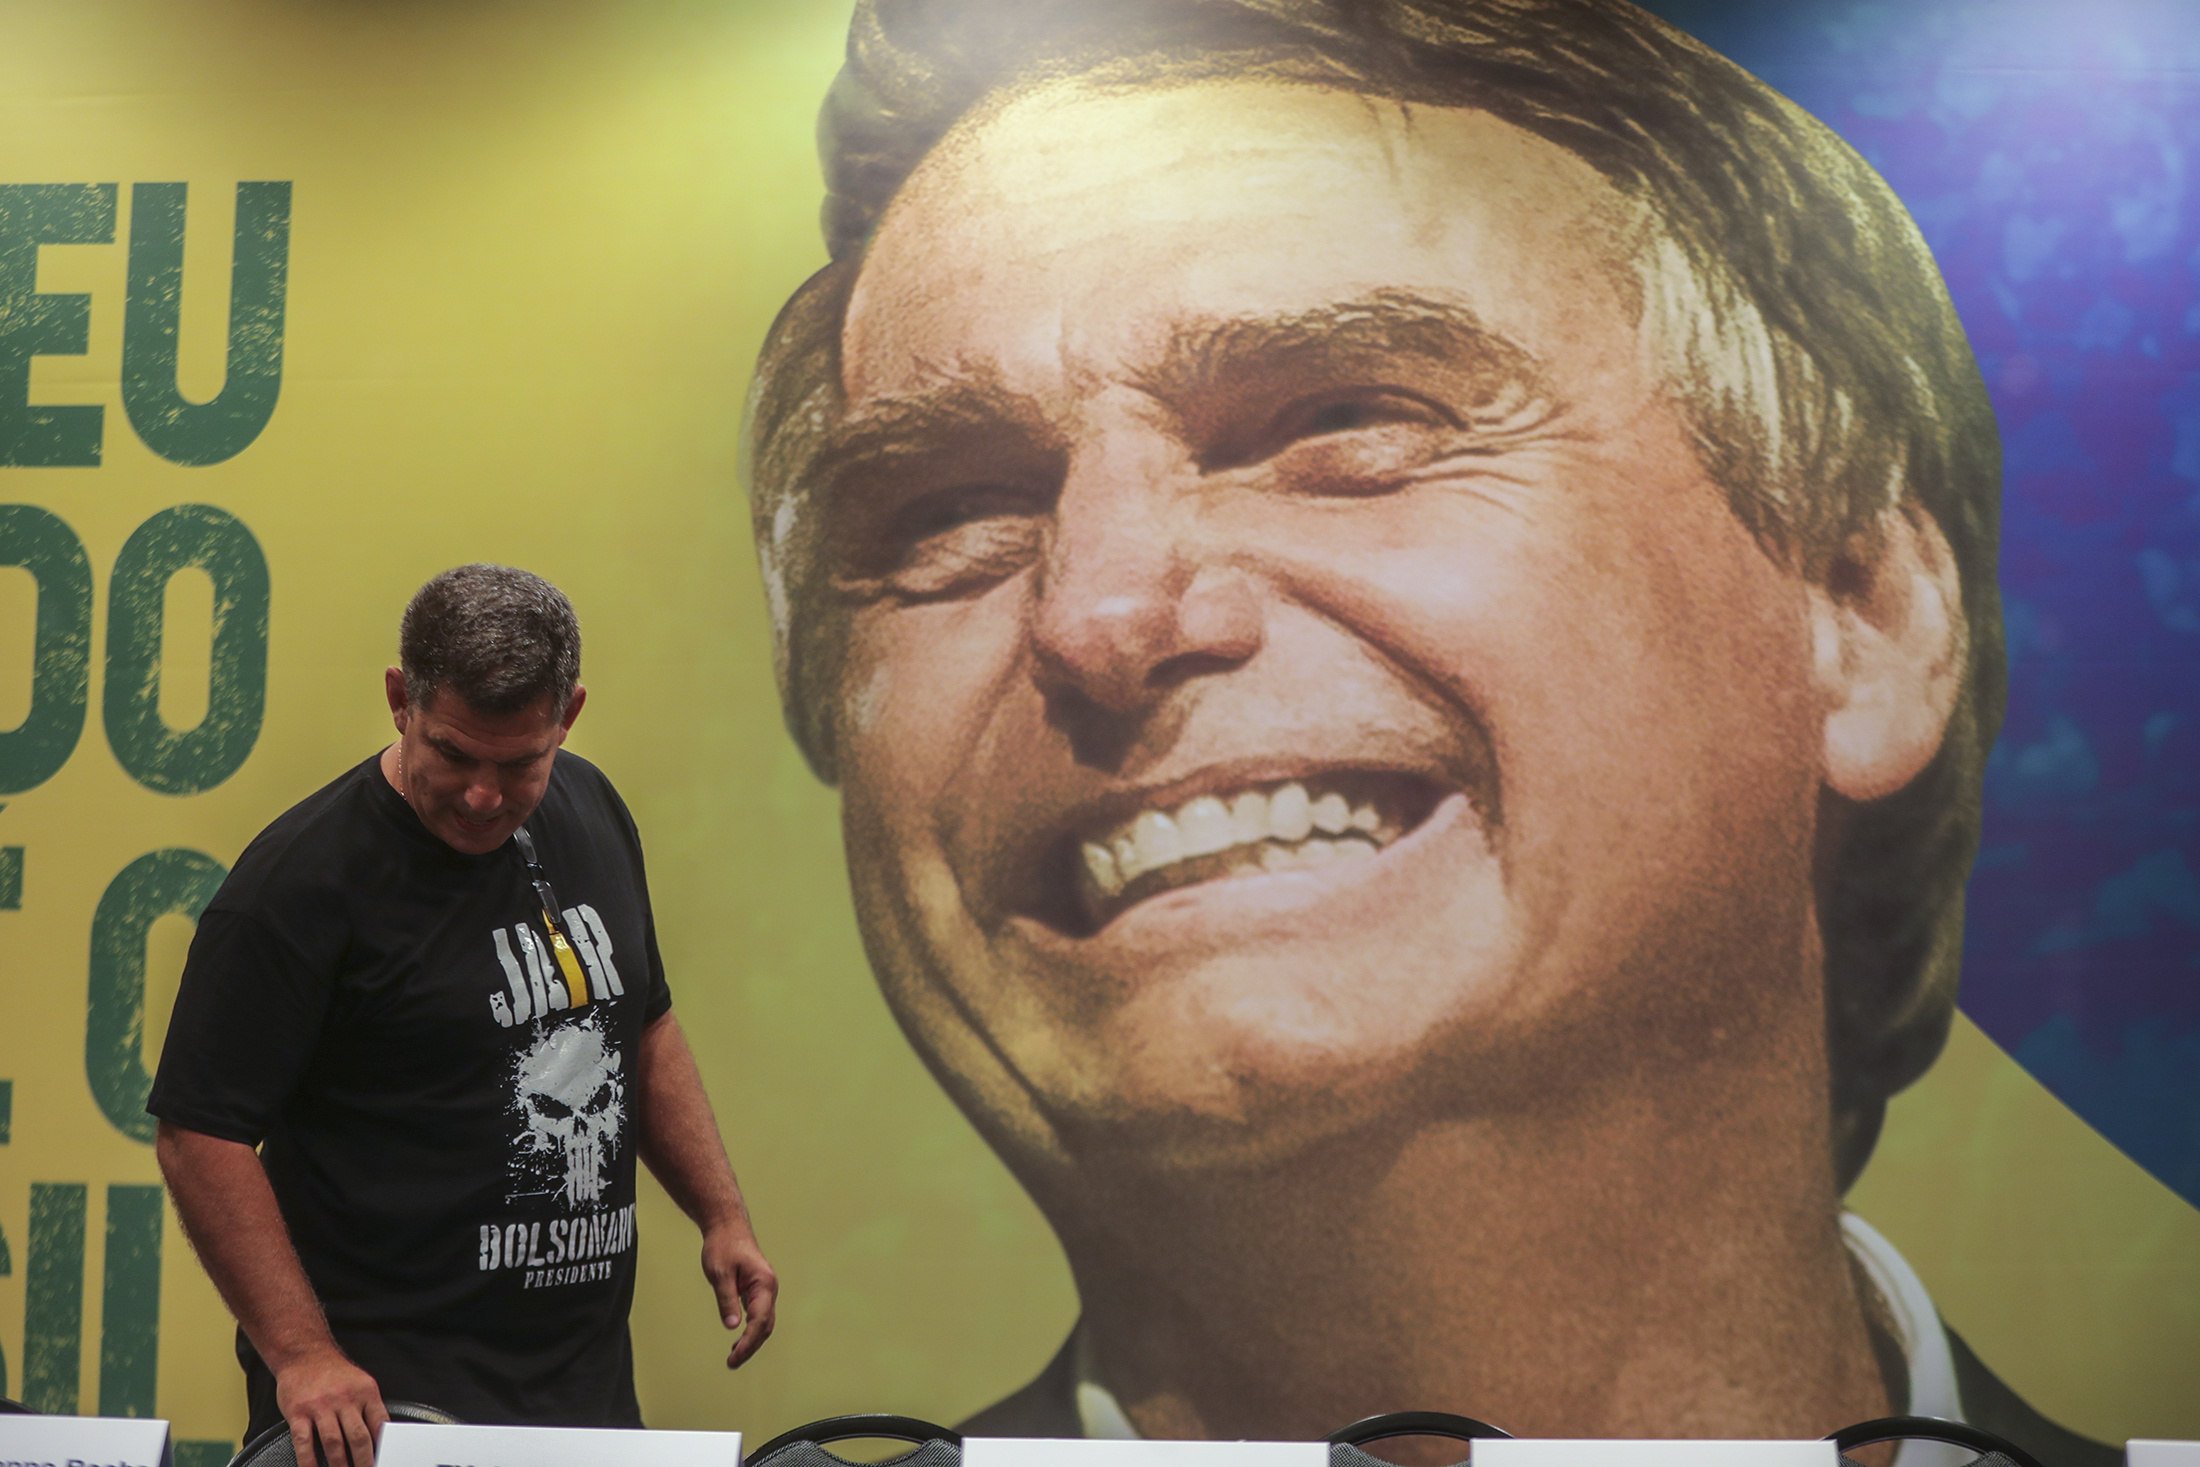 El ultra brasileño Bolsonaro gana la primera vuelta de las presidenciales